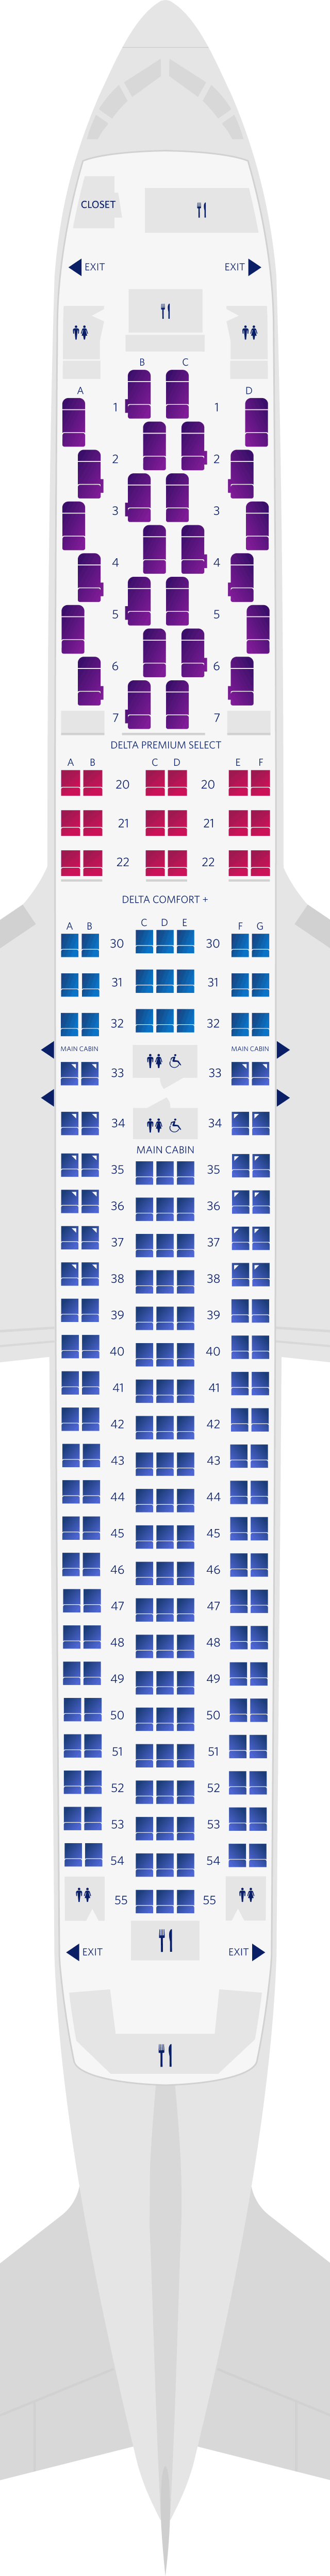 Boeing 767-300ER (76K) Seat Map